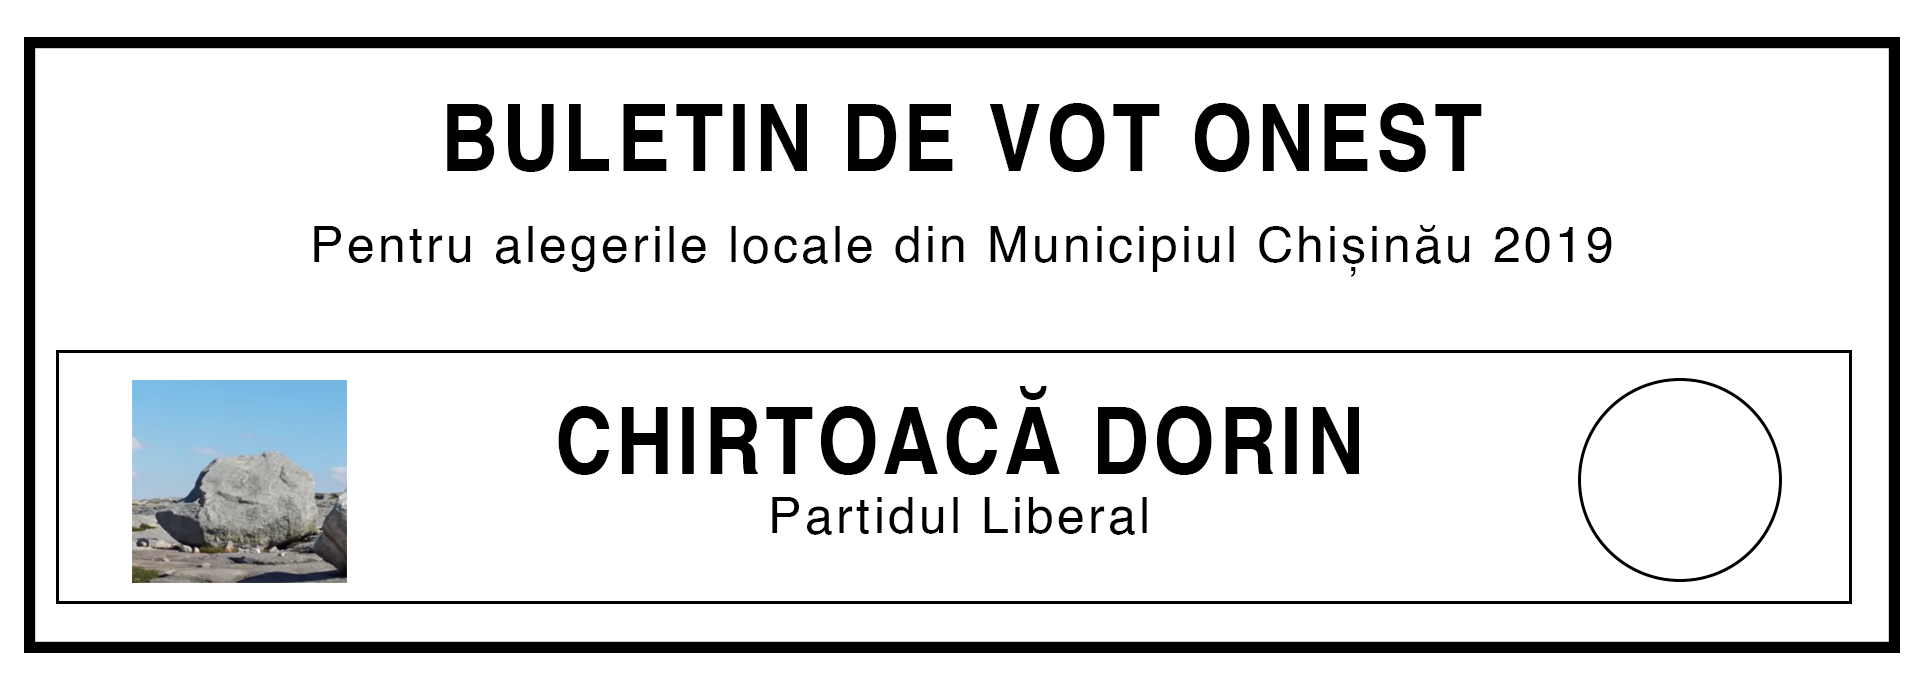 Buletin de vot, haios, glumă, electorala 2019, campanie electorală, alegeri, primar, Chișinău